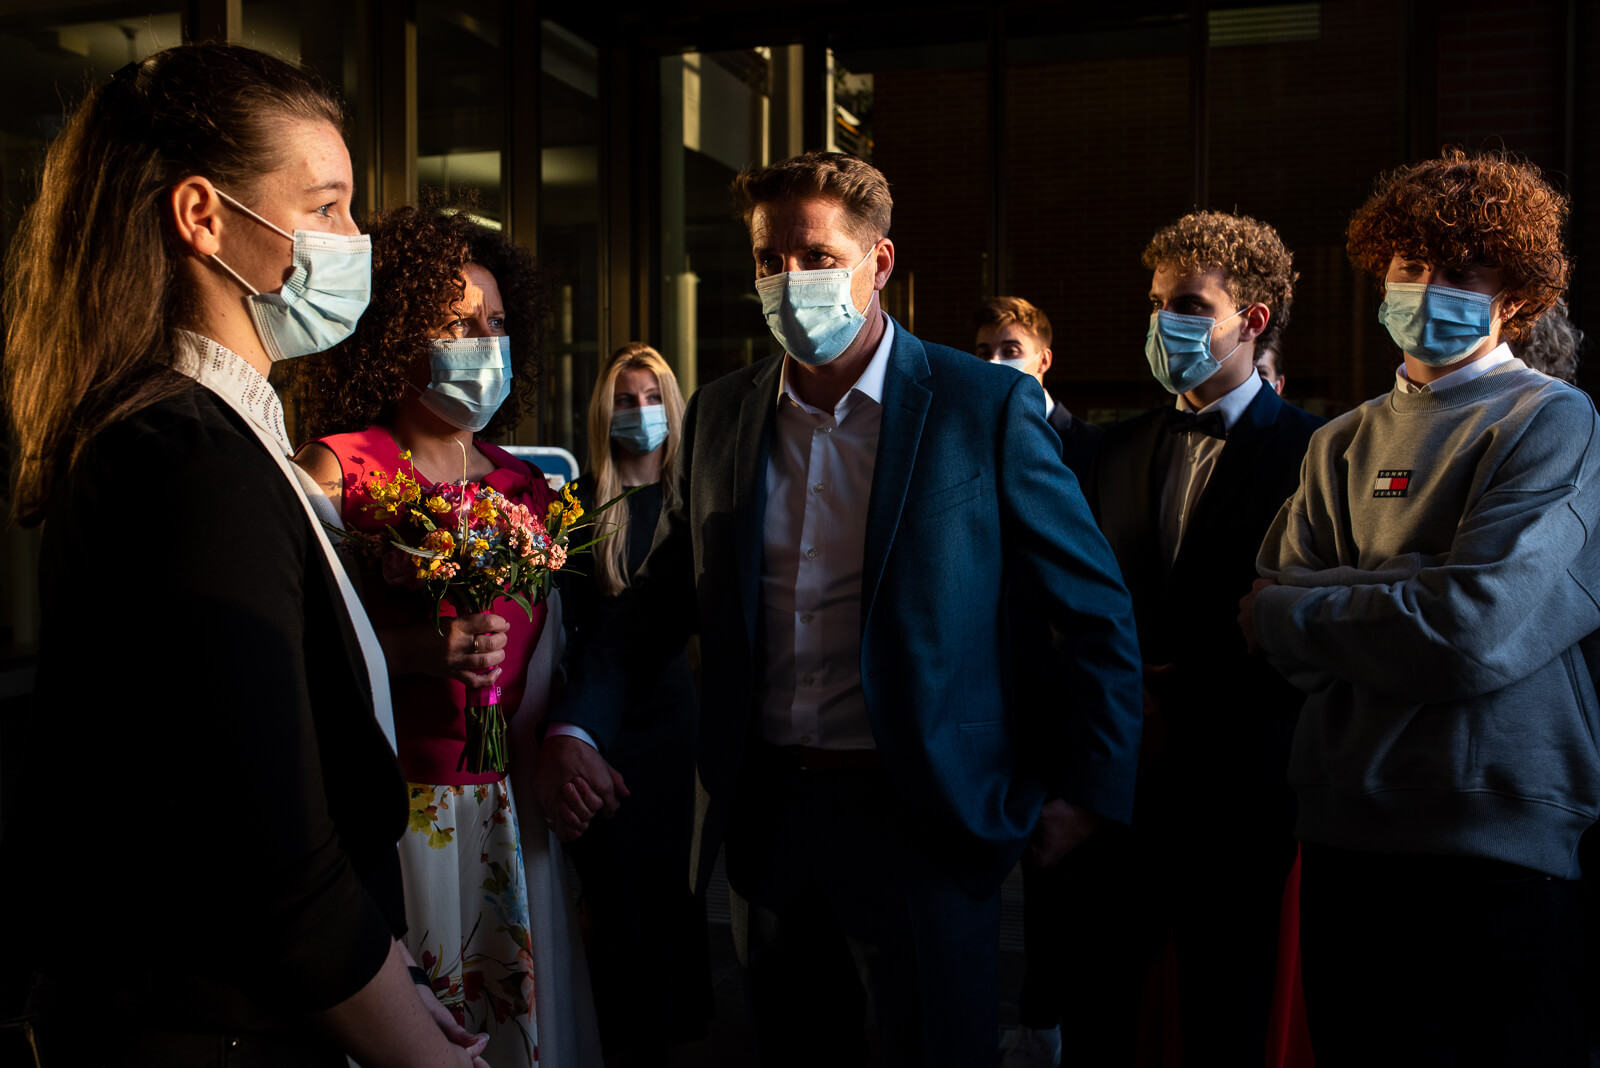 mondmaskers bij toekomen gemeentehuis tijdens huwelijk